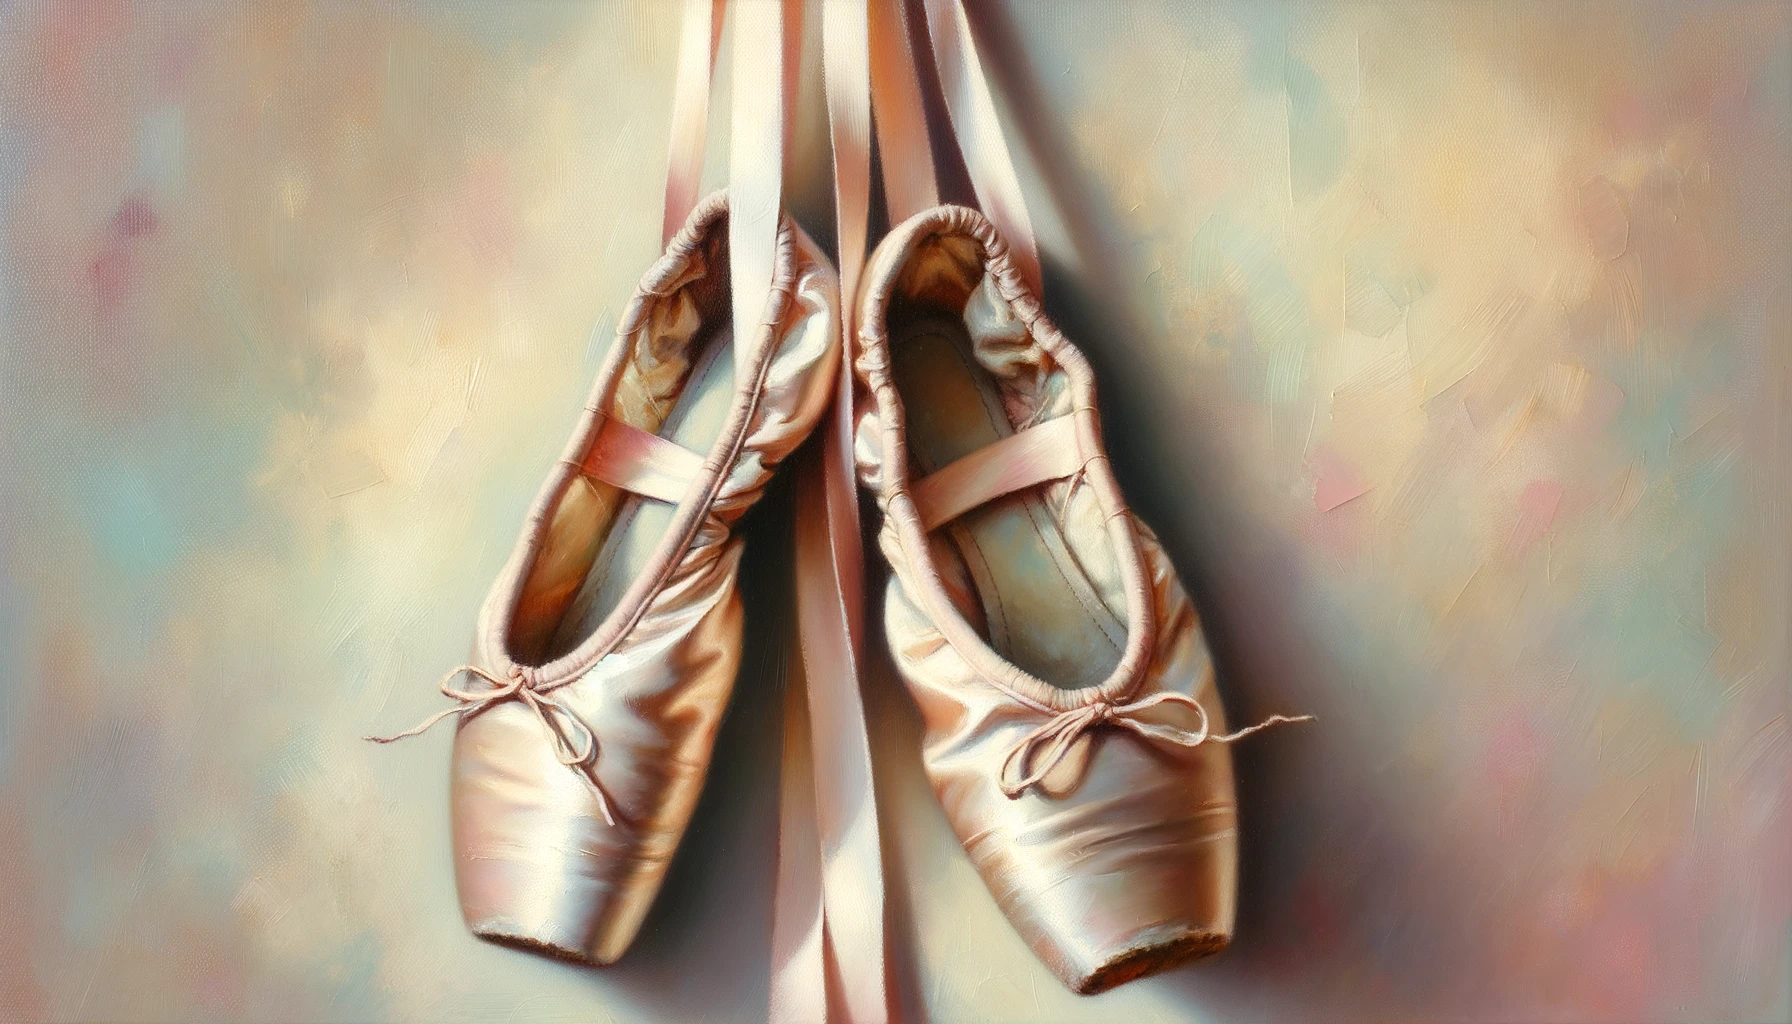 Ölgemälde von abgetragenen Ballettschuhen, die an ihren Bändern vor einem pastellfarbenen Hintergrund hängen, der ein Gefühl von Nostalgie hervorruft.